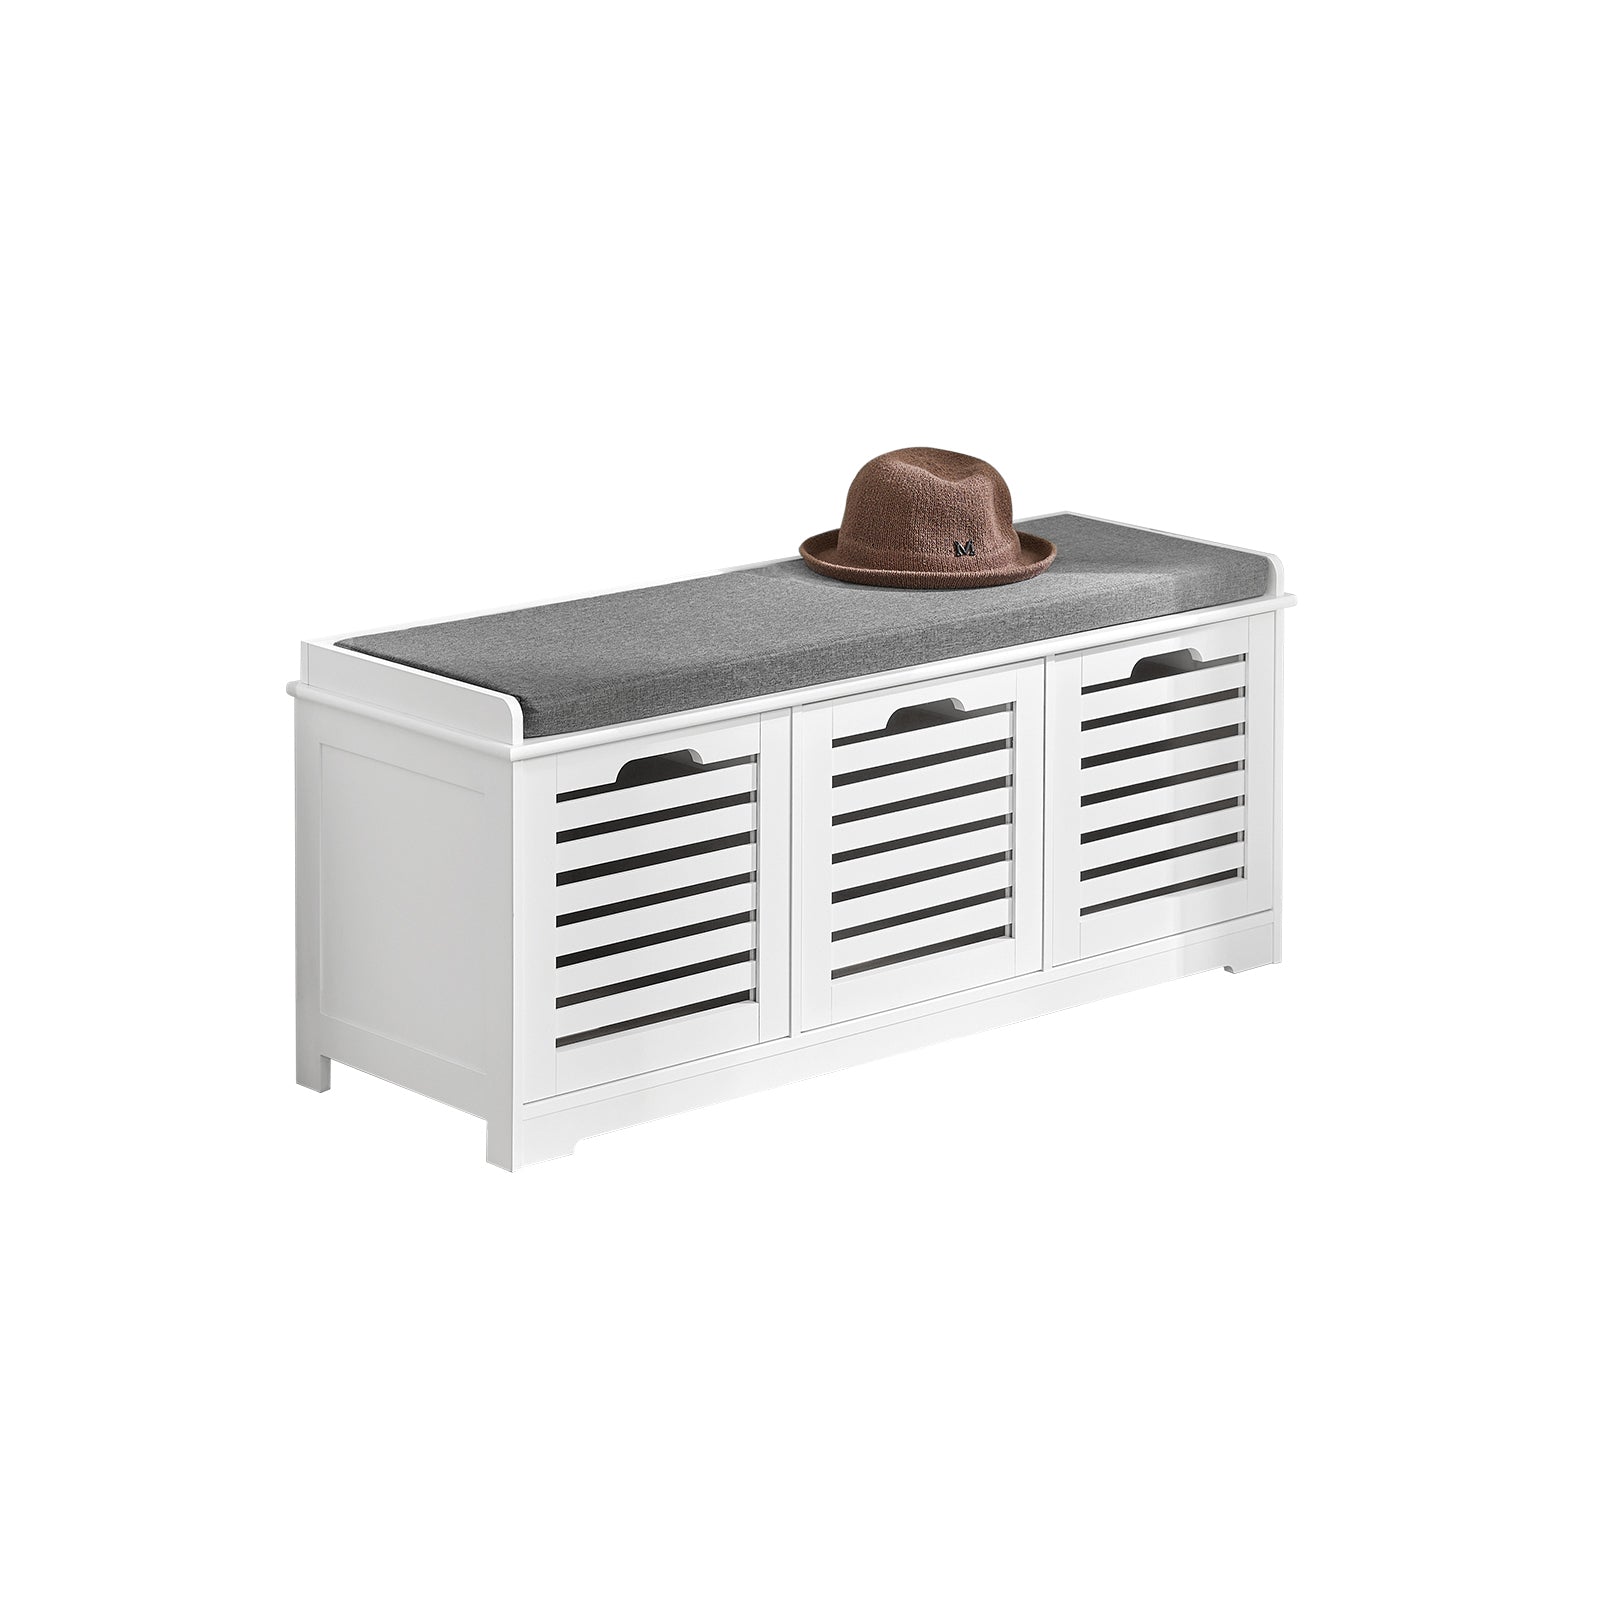 SoBuy Shoe Storage Bench With Drawers & Cushion,FSR23-W